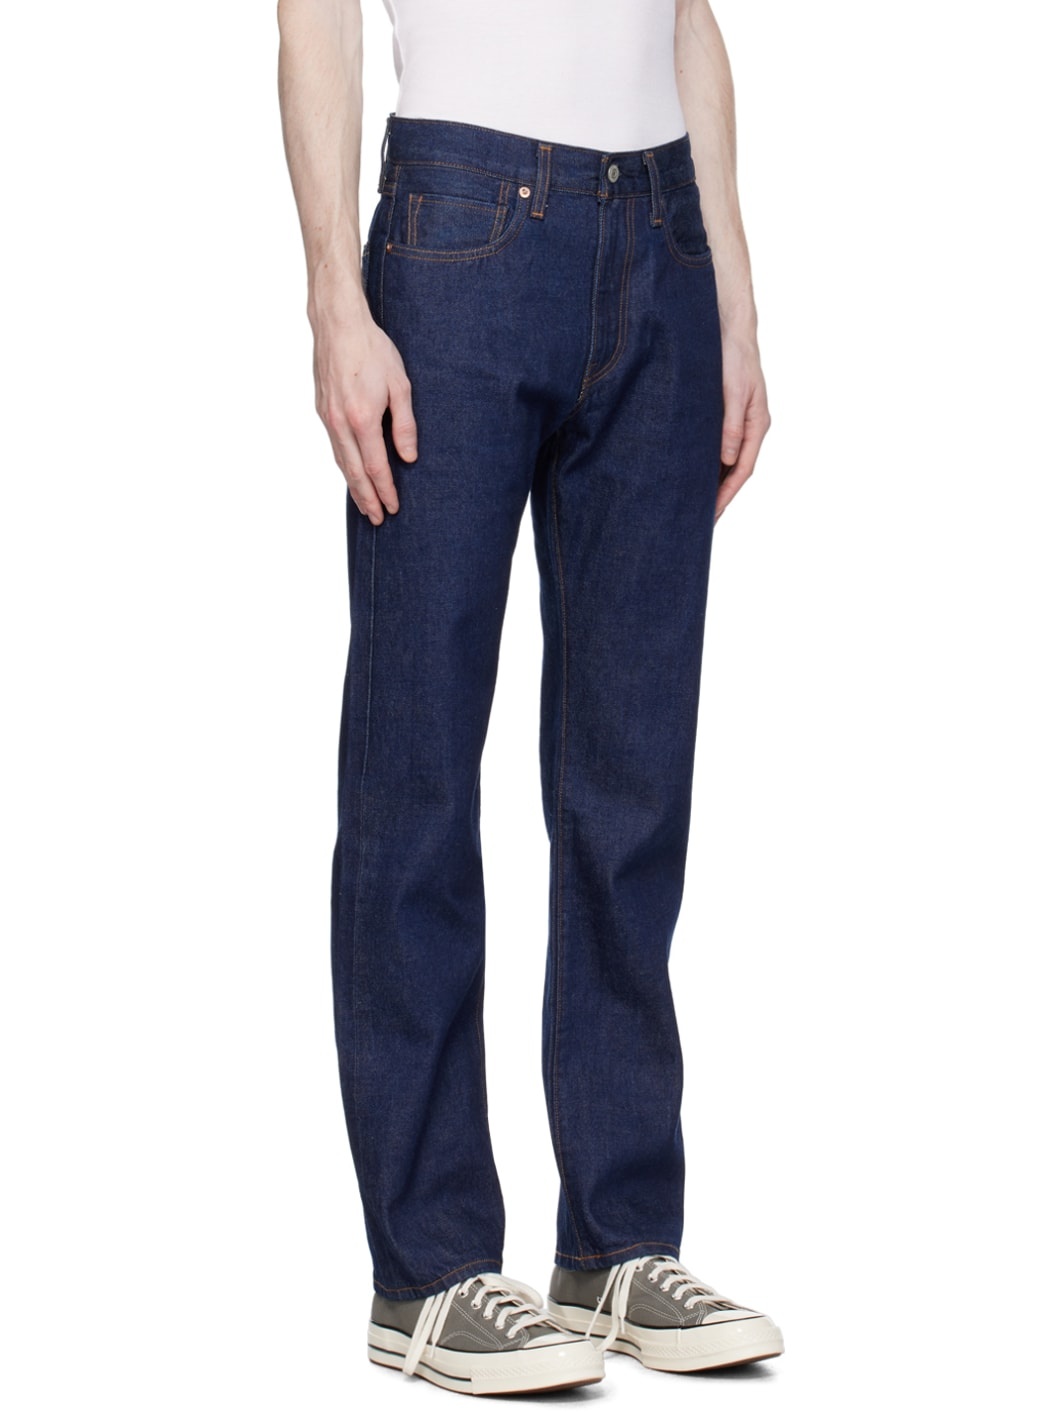 Indigo 505 Jeans - 2